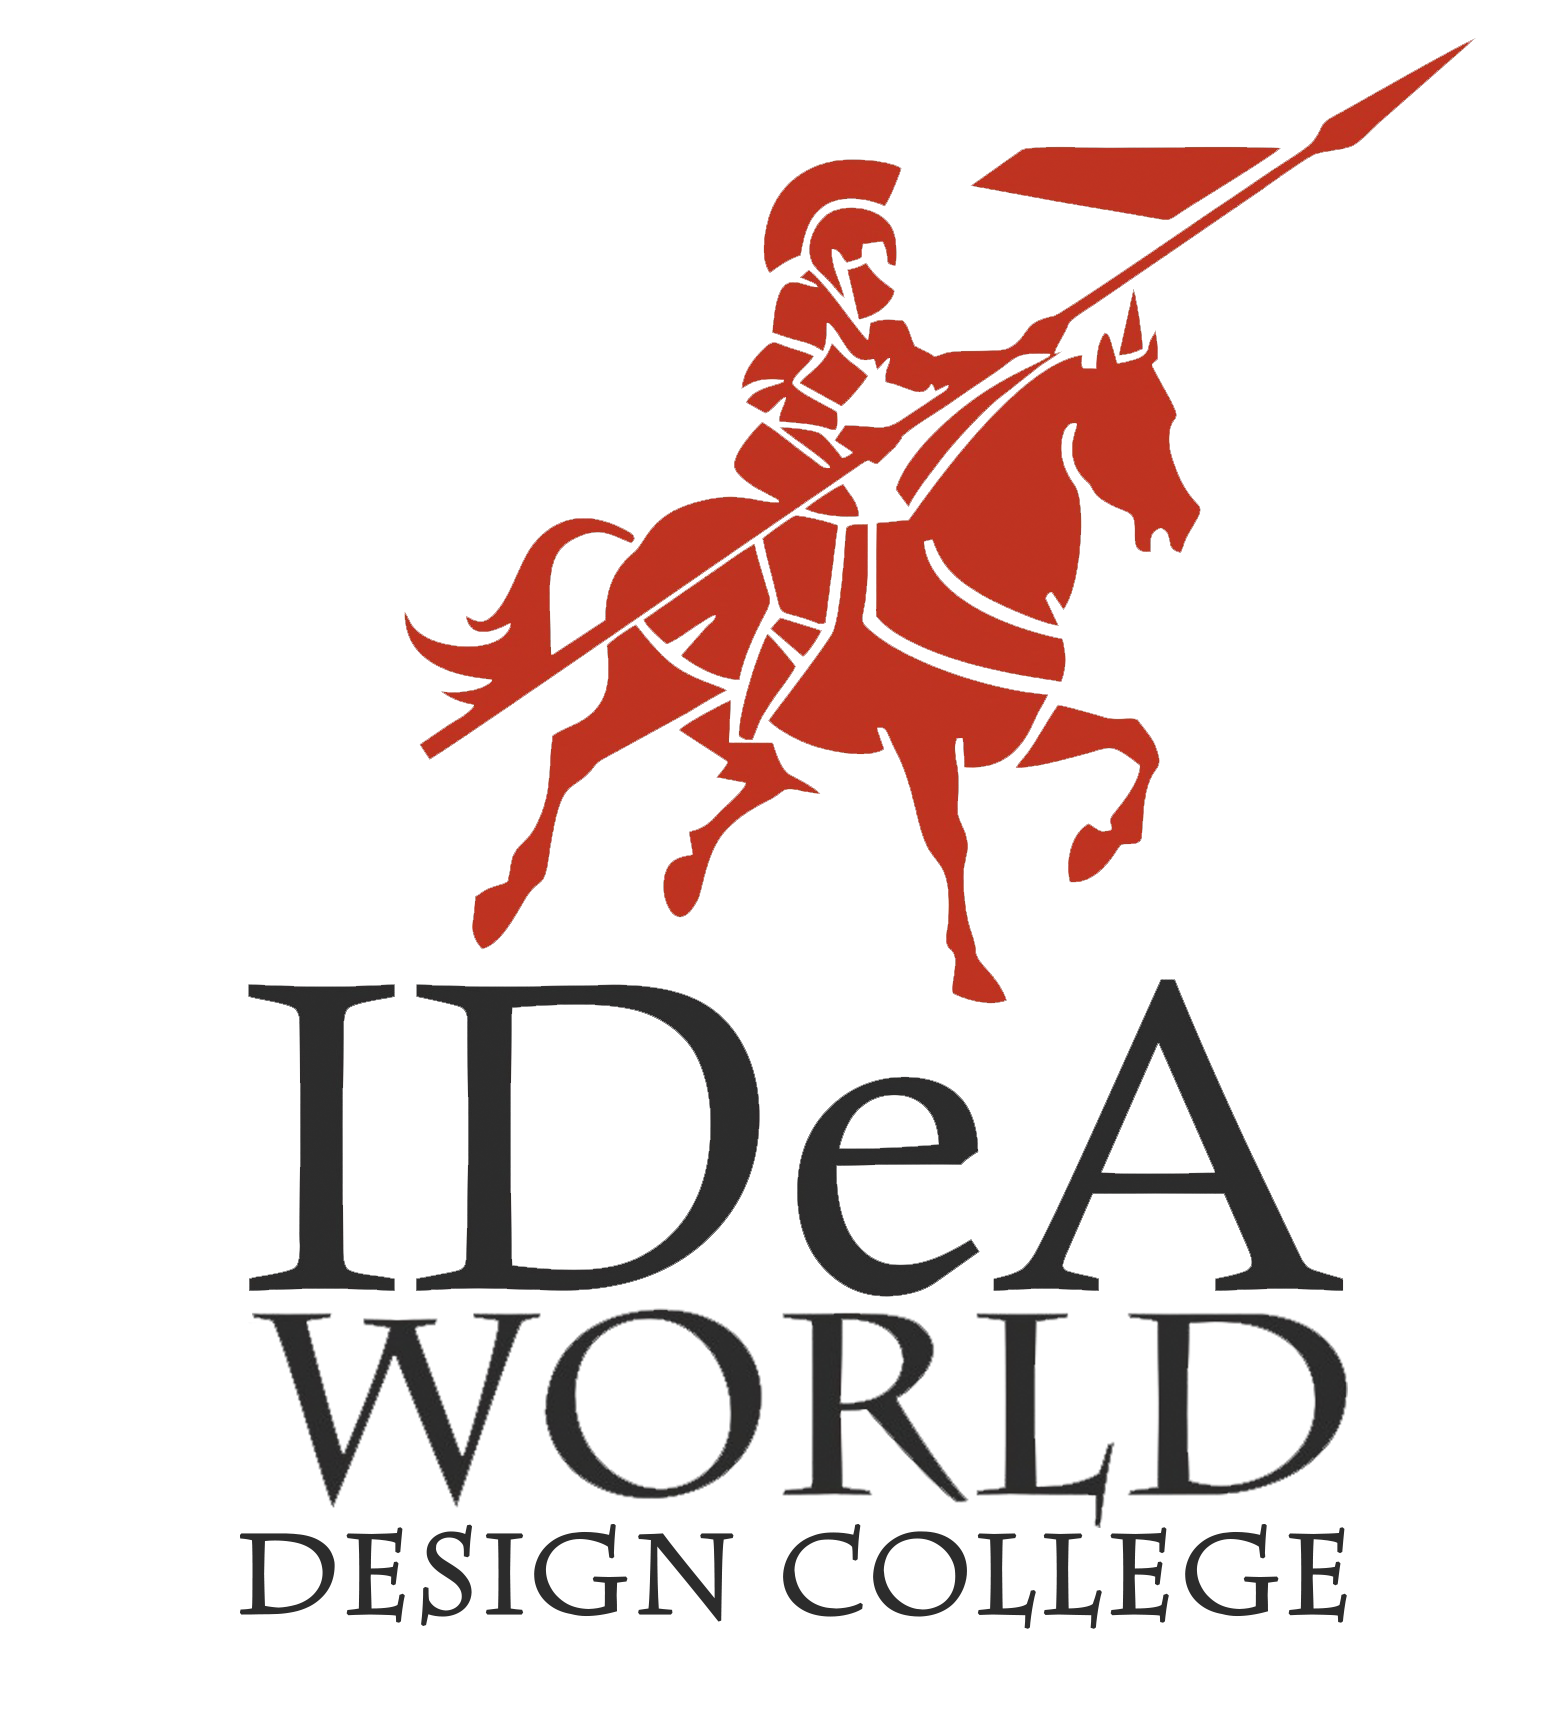 IDeA World Design College Logo